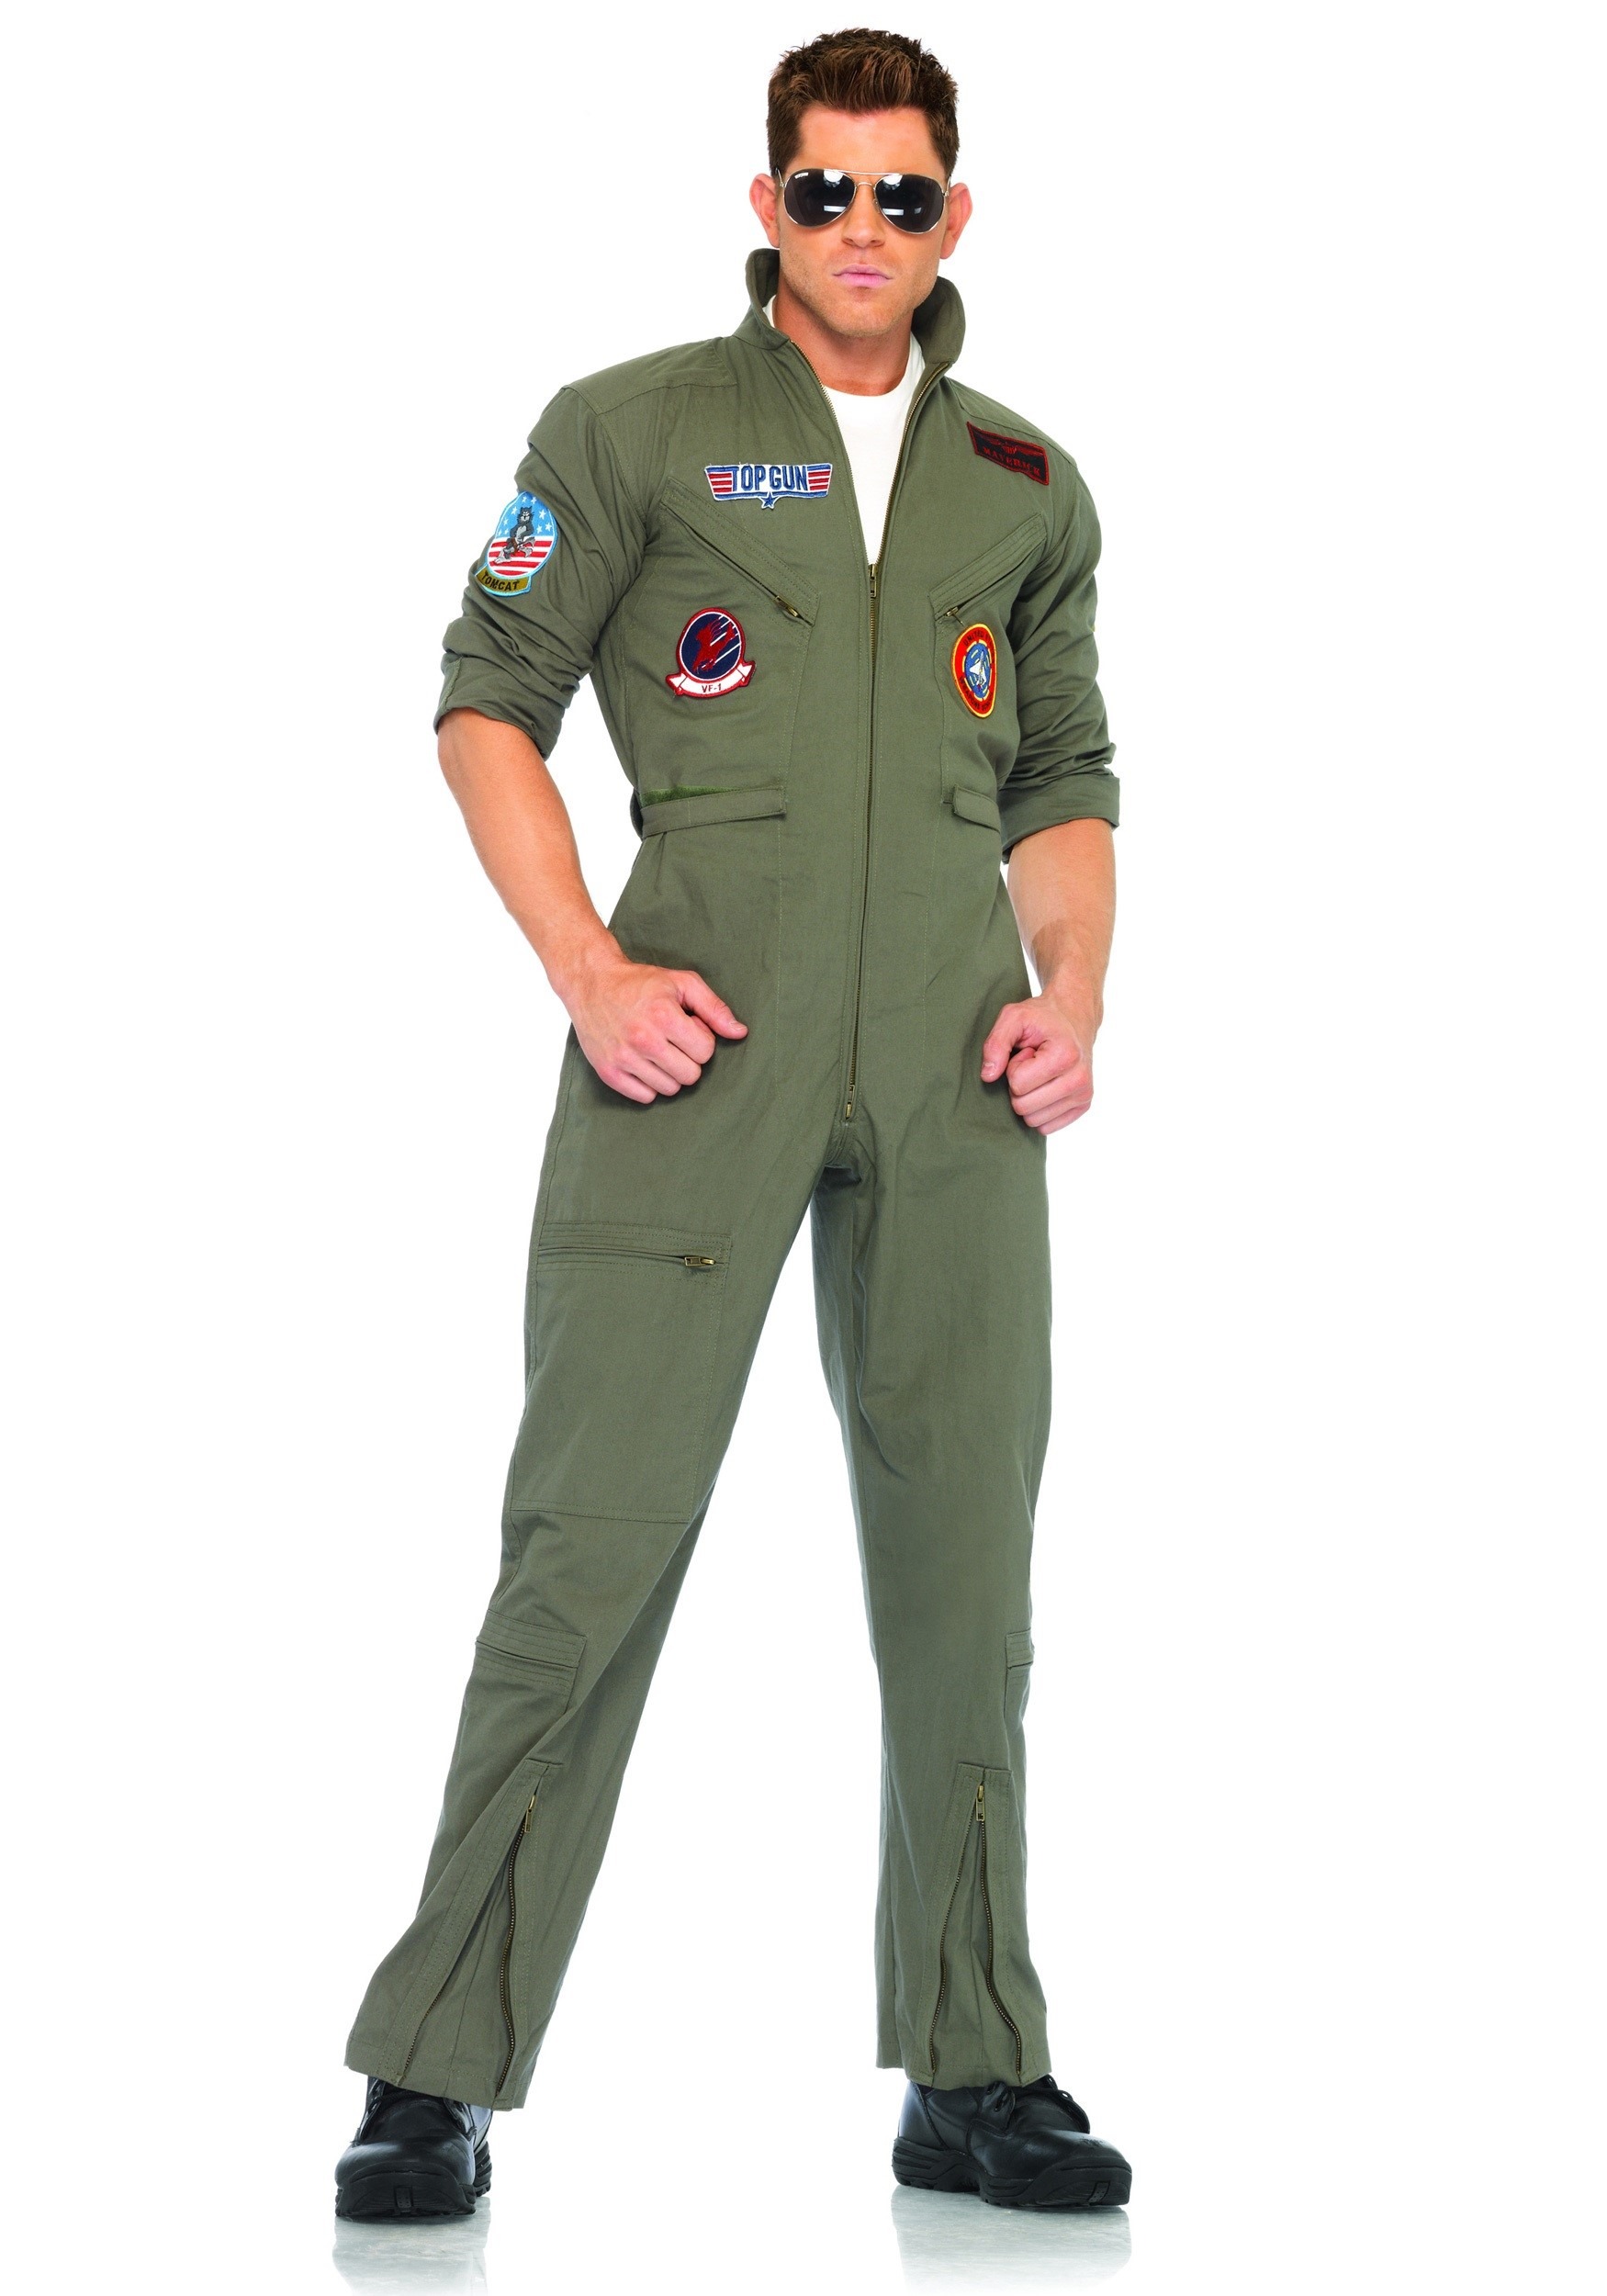 Men's Top Gun Flight Suit Costume , Pilot Halloween Costume